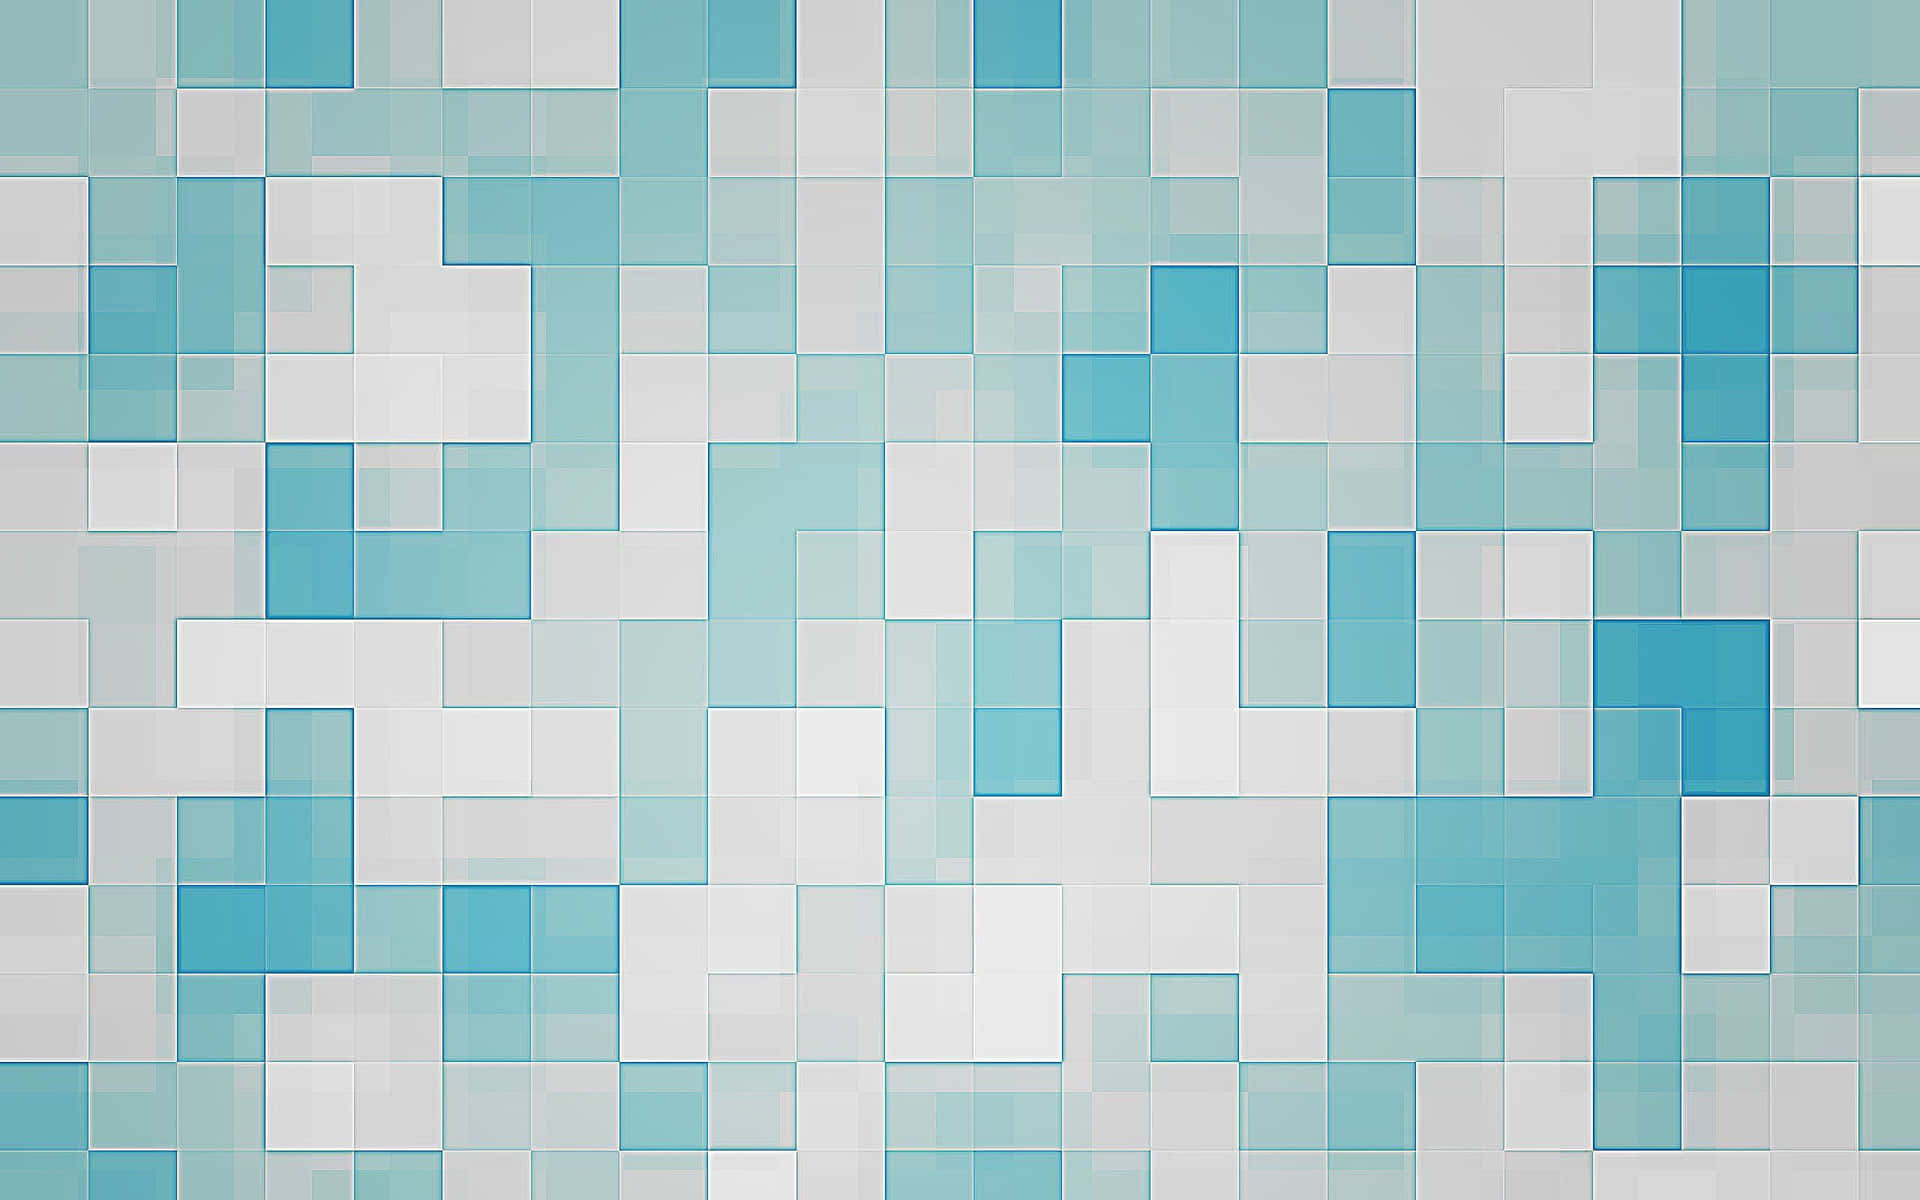 Hellerhintergrund Mit Einem Muster Ähnlich Wie Bei Tetris